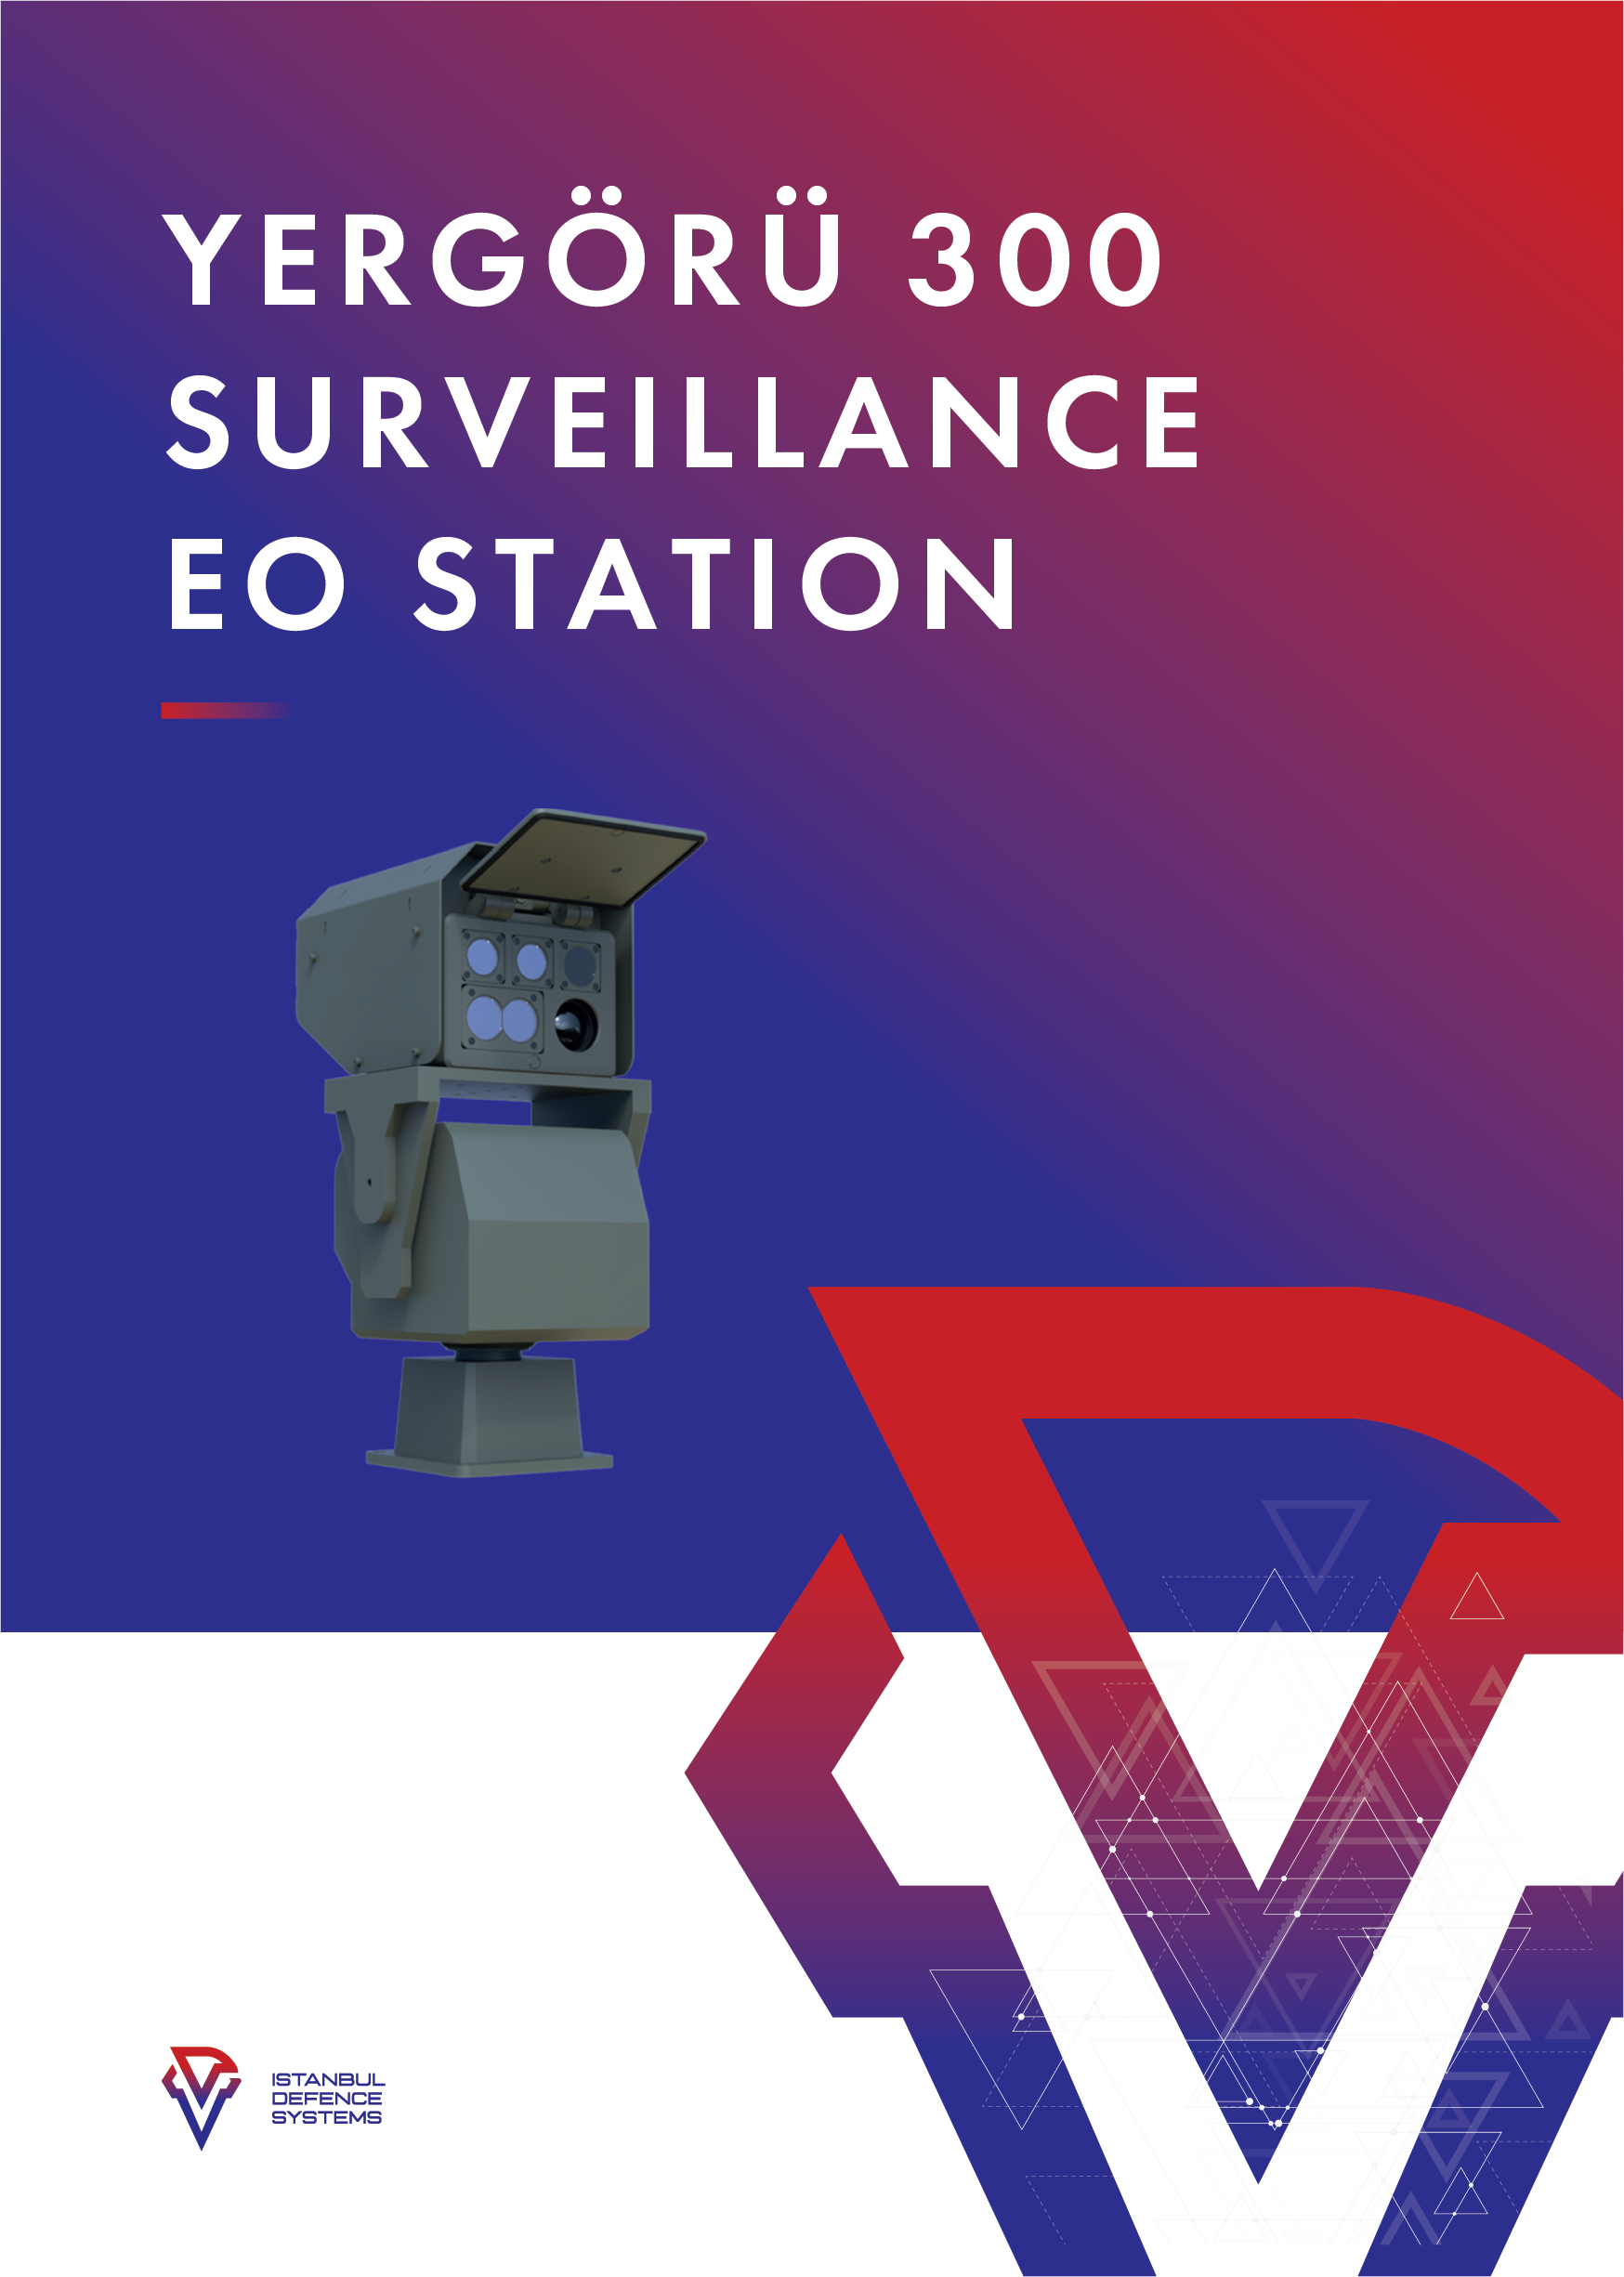 yergoru-300-surveillance@4x.png